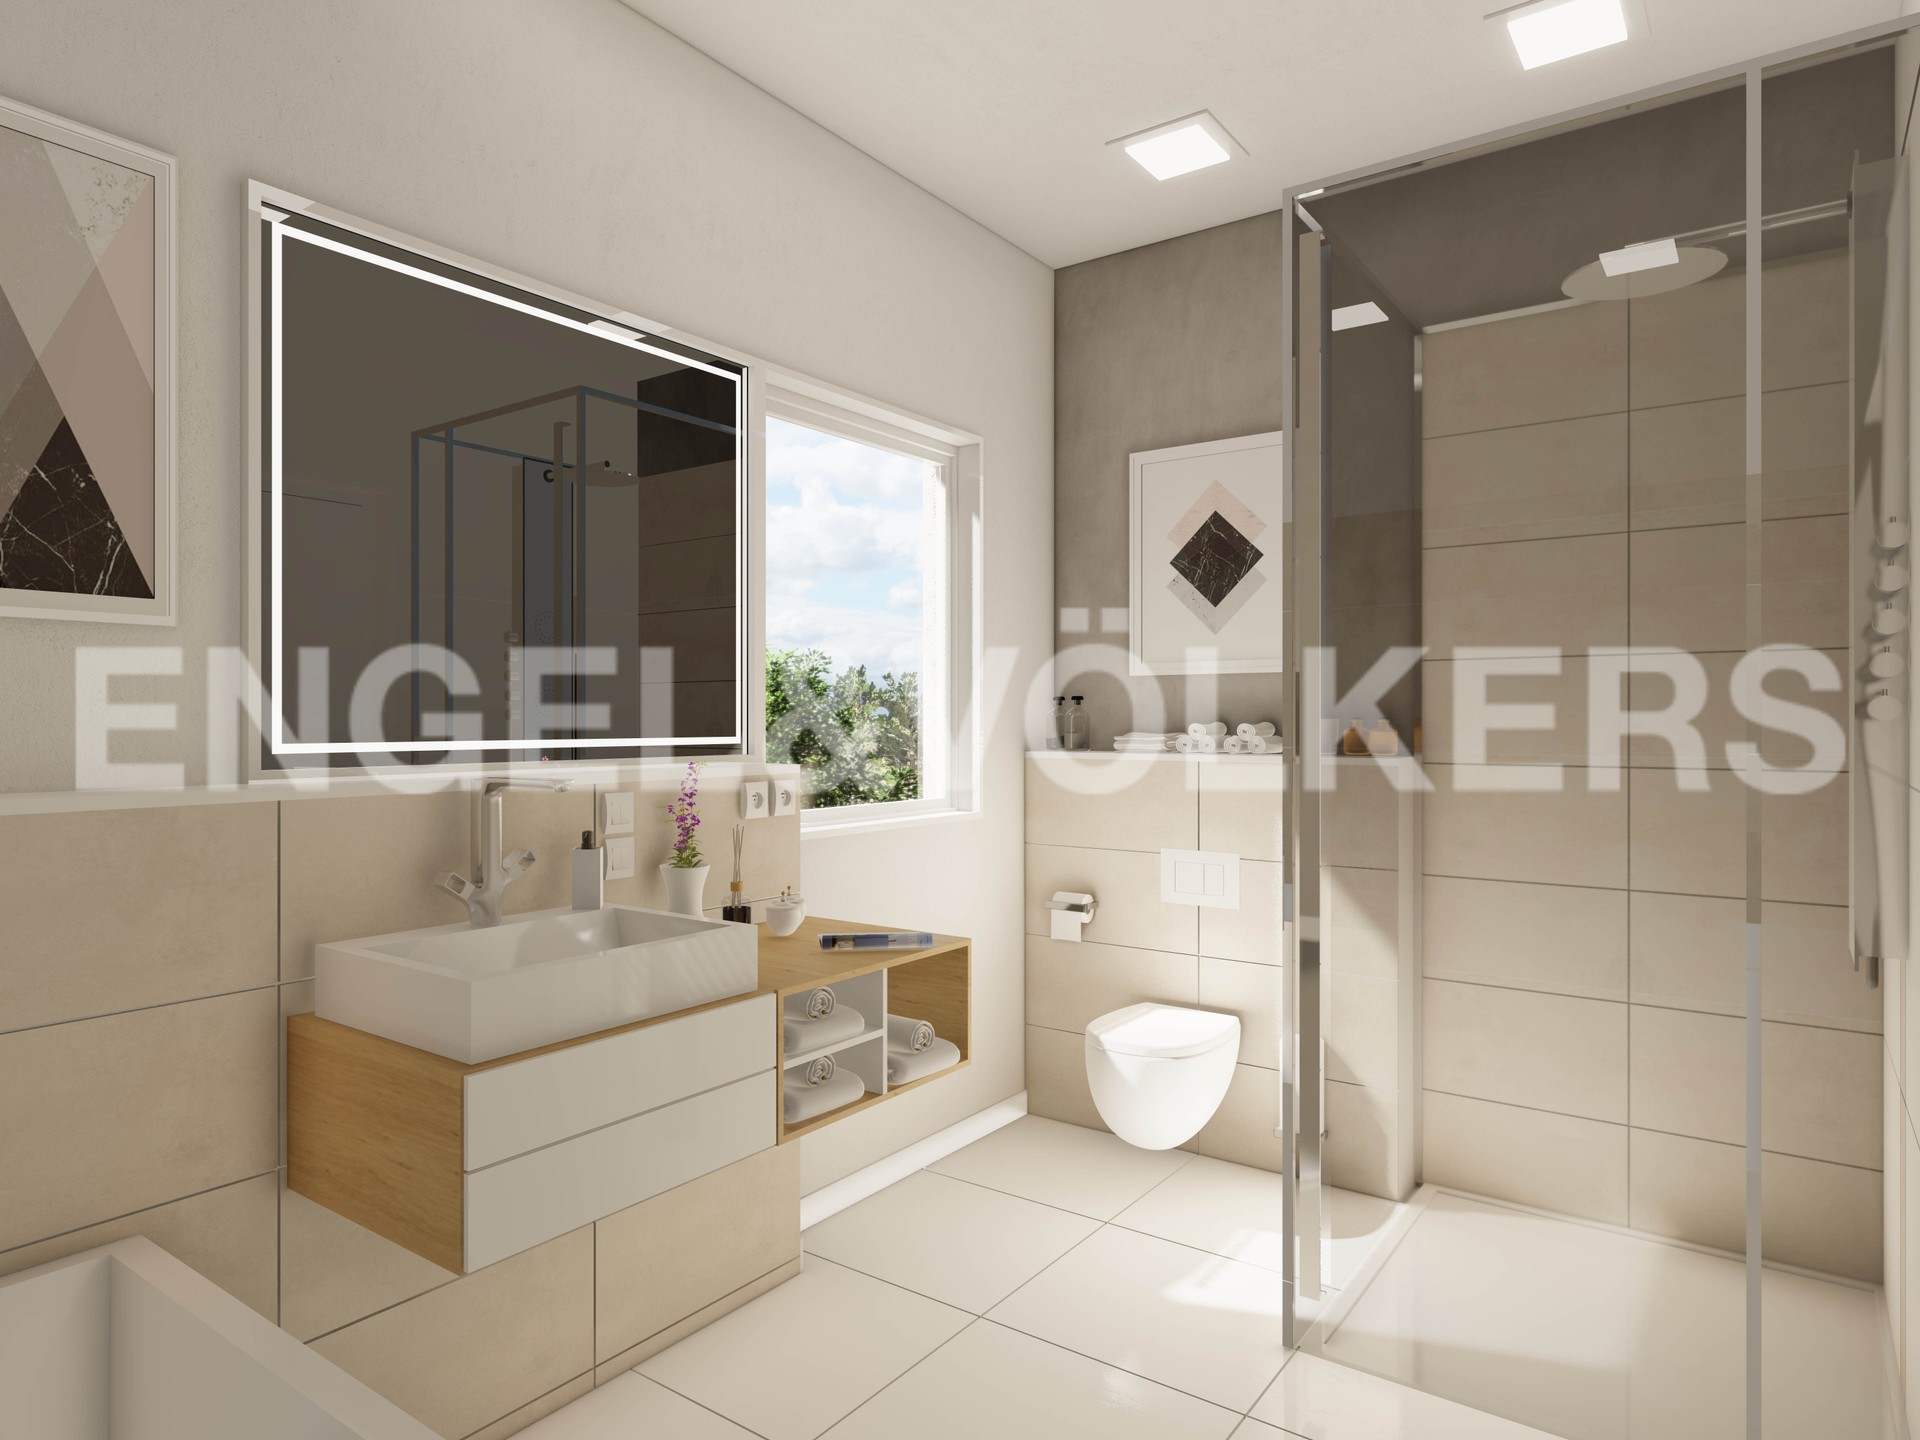 Wohnung in Regensburg (Kreis) - Visualiserung/Einrichtungsbeispiel - Badezimmer